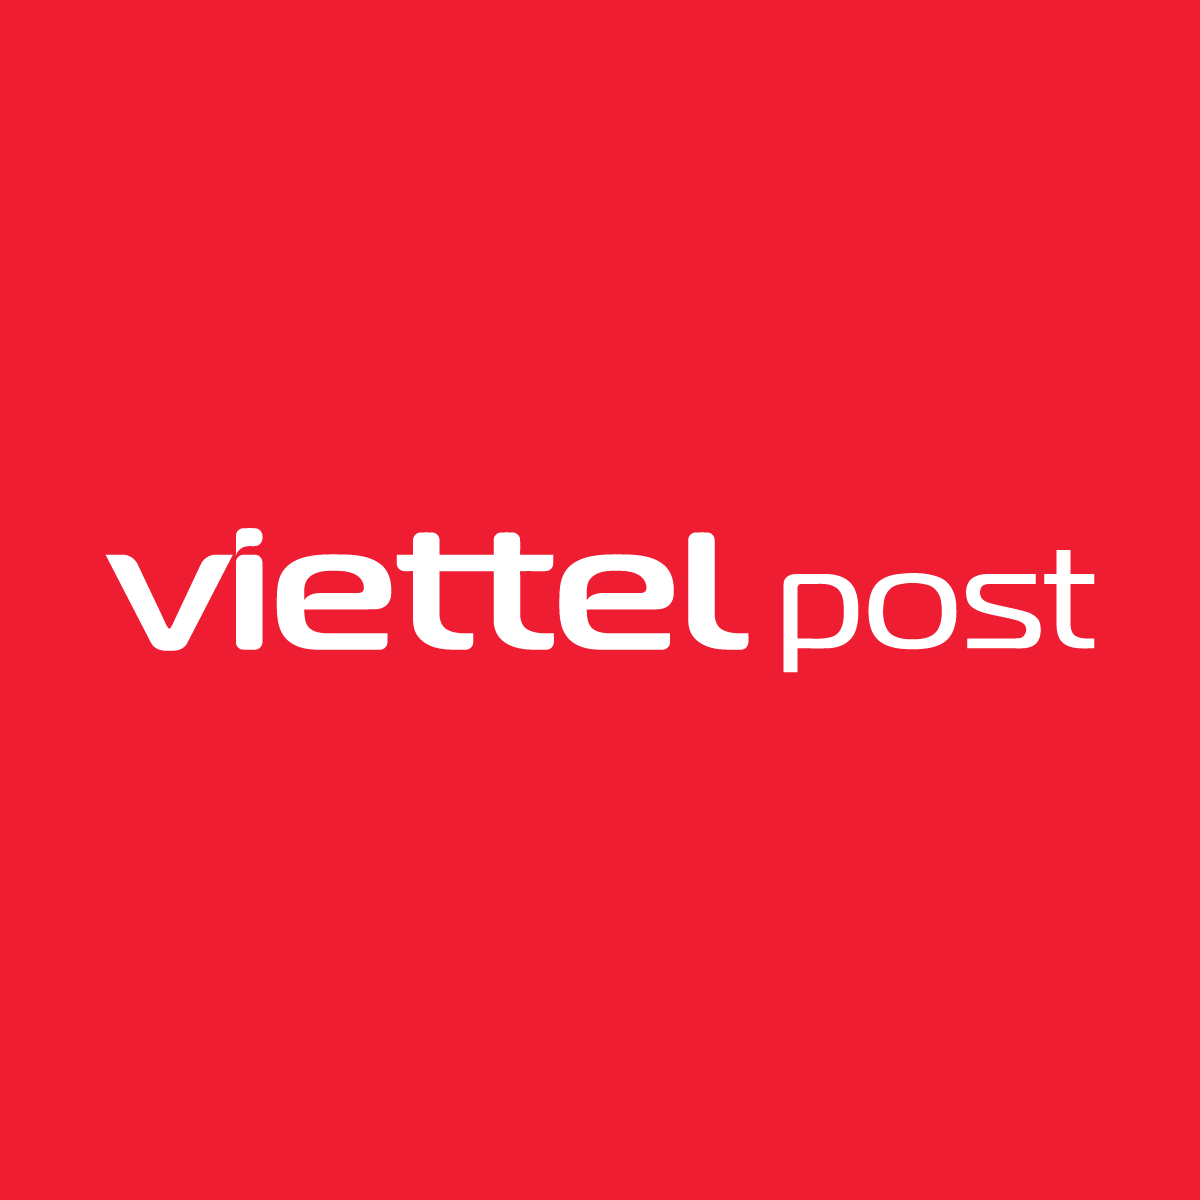 Logo Viettel Post Red